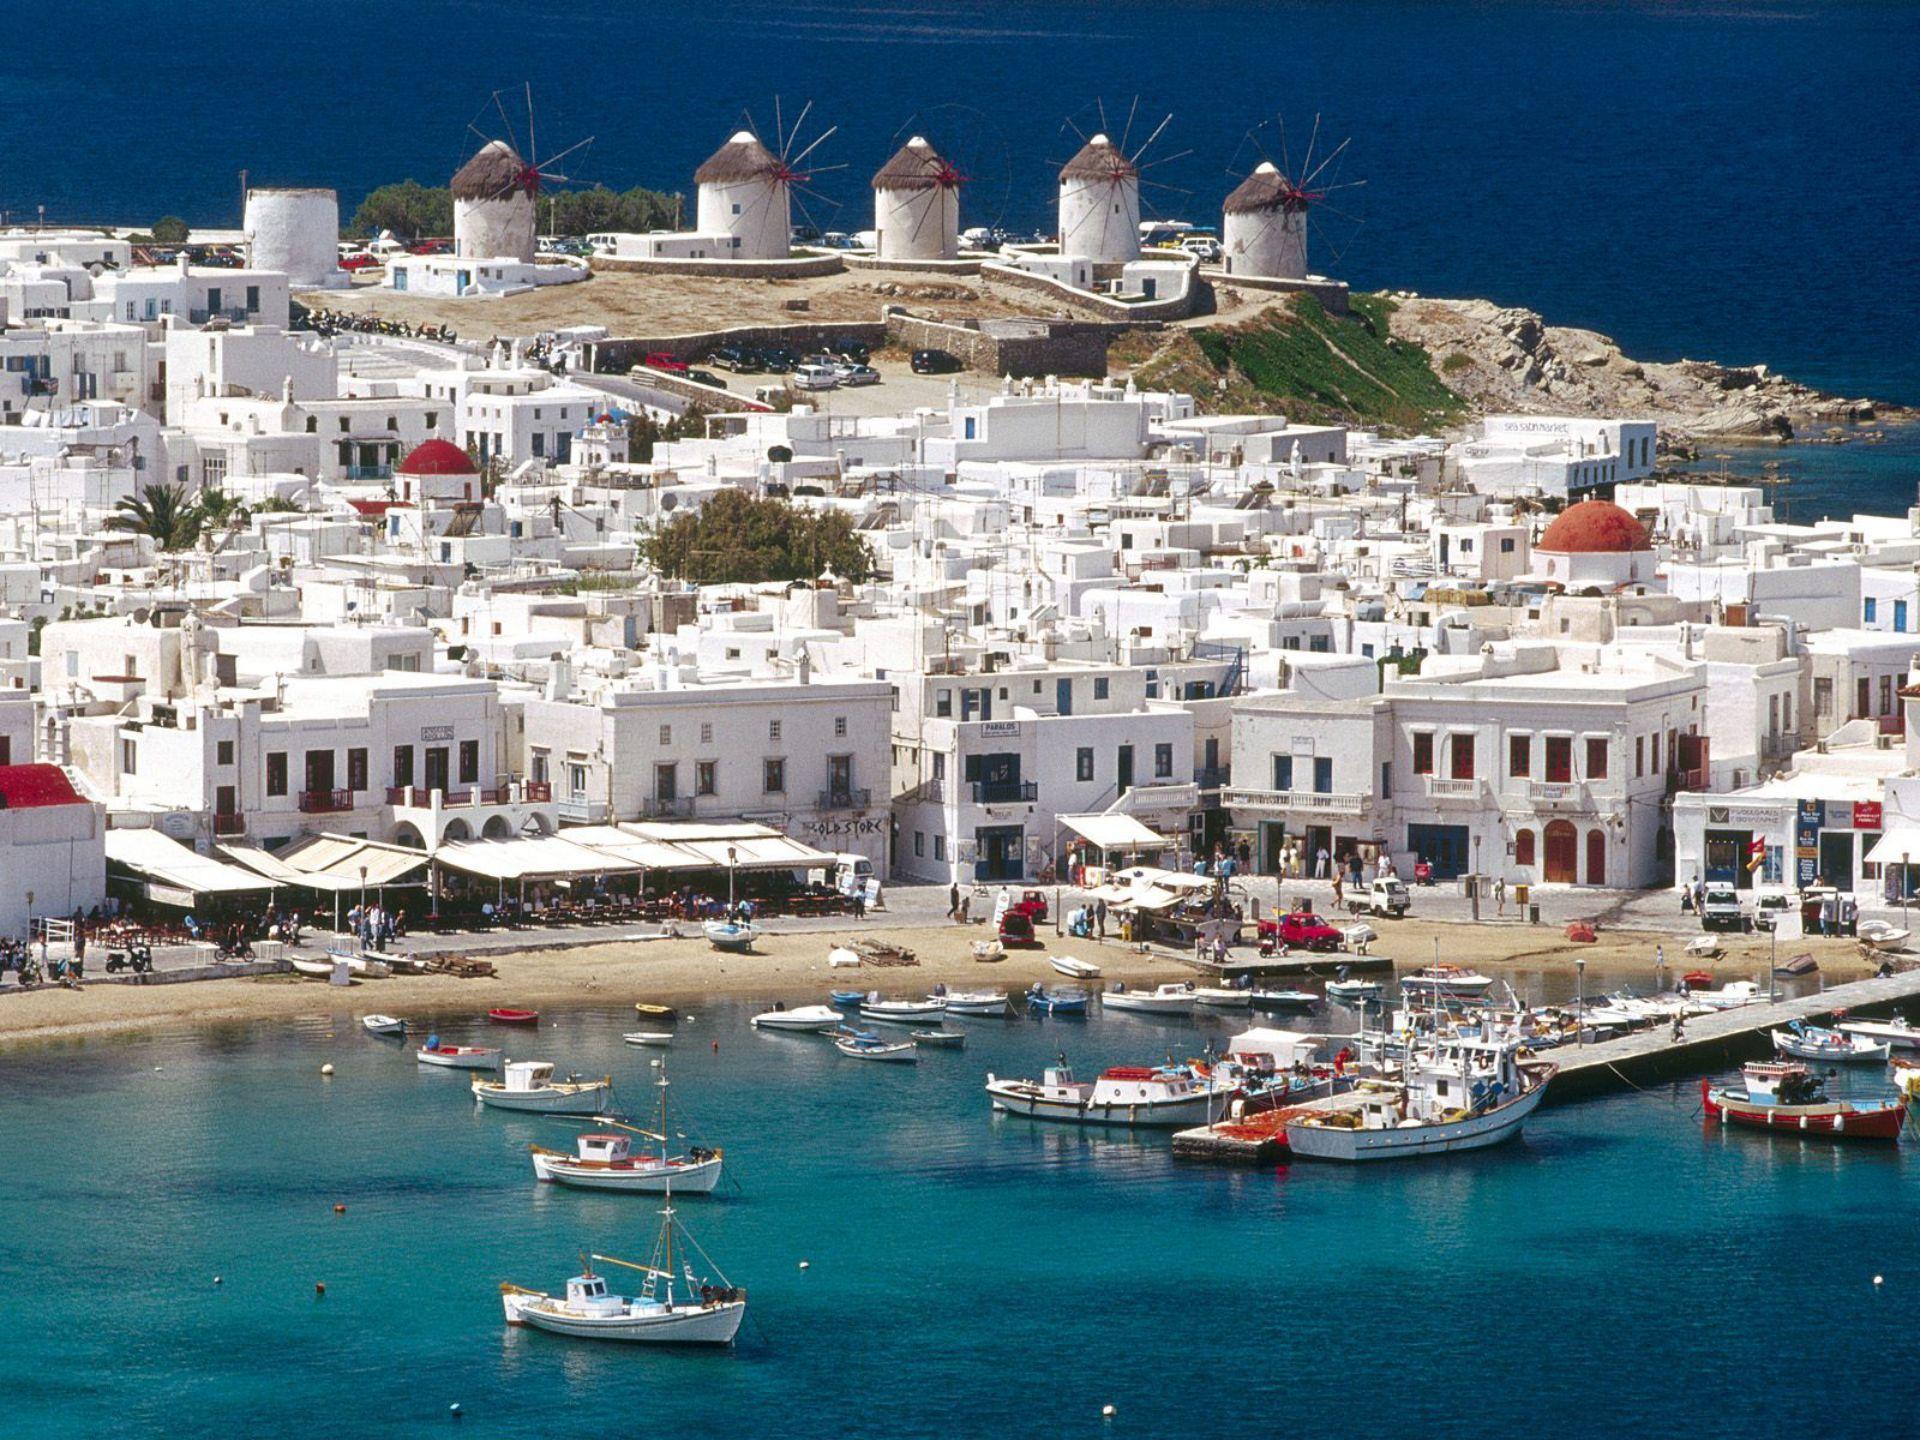 The Greece Island of Mykonos widescreen wallpaper. Wide